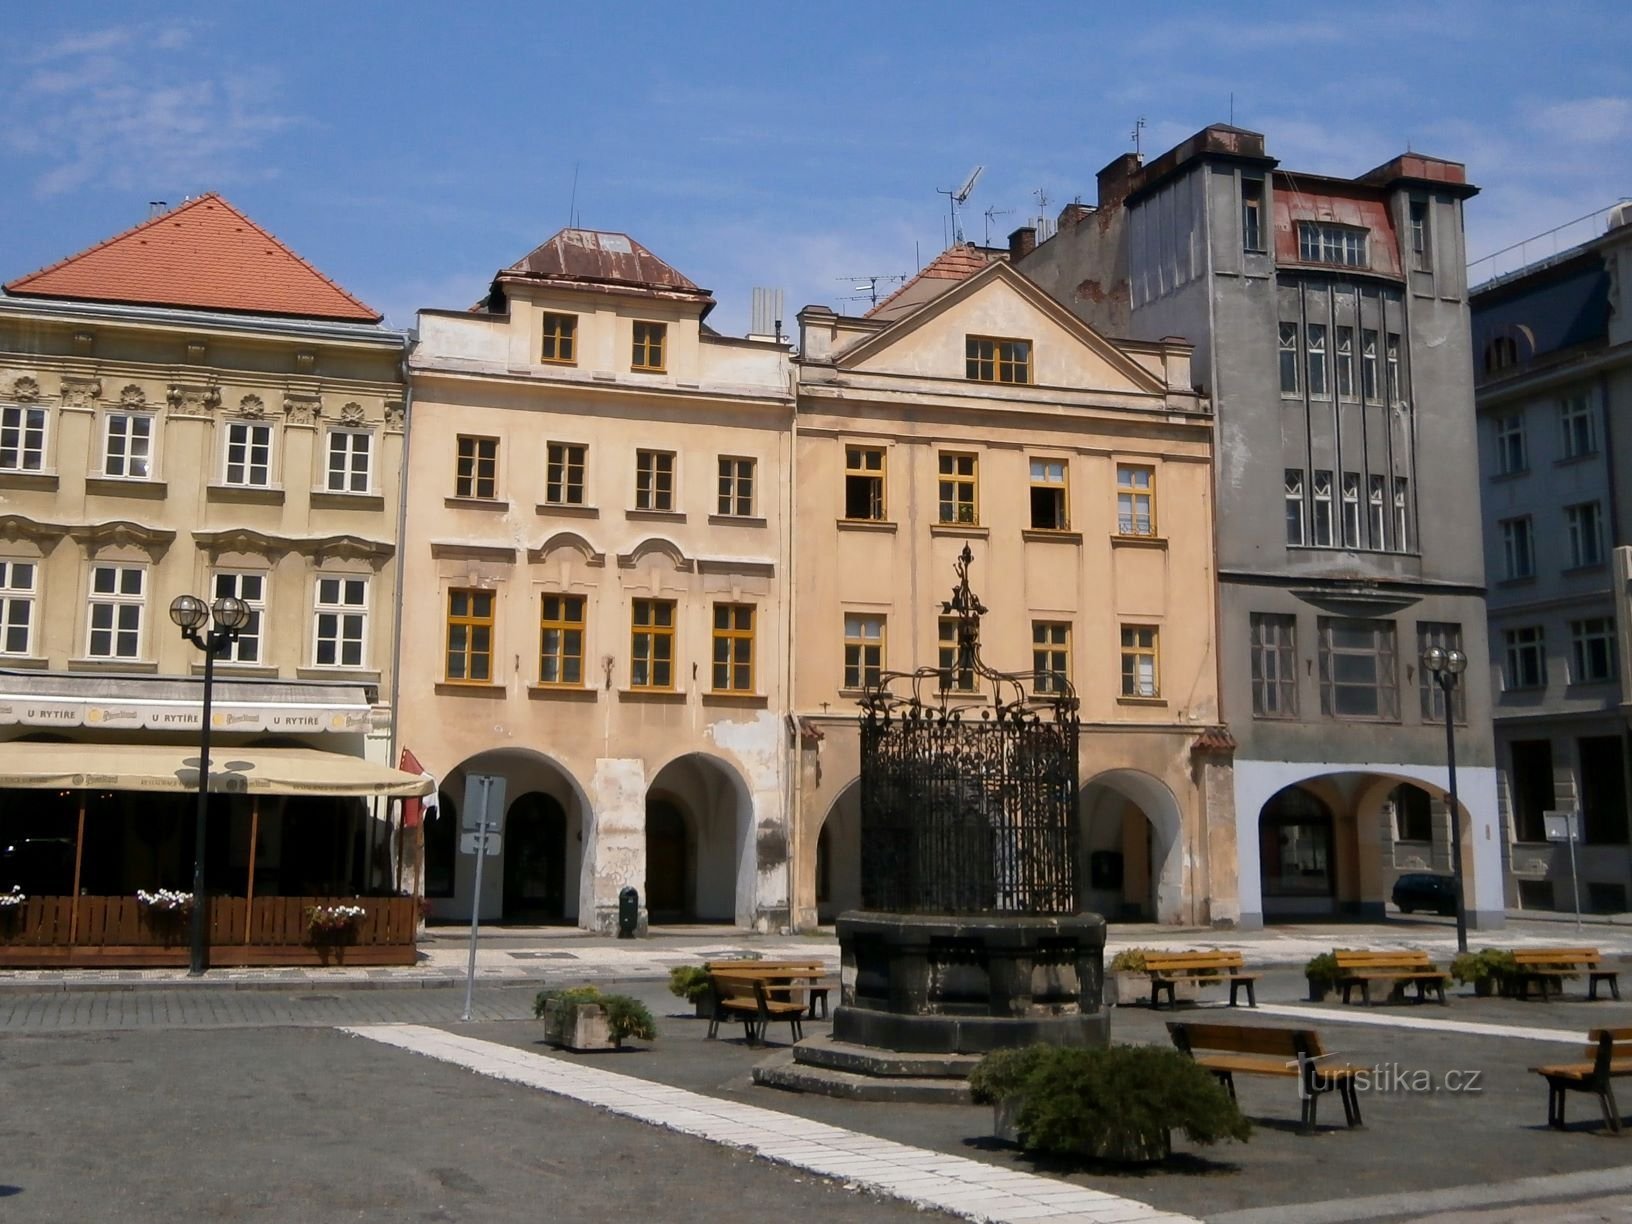 Velké náměstí No. 143-142 (Hradec Králové, 23.7.2016/XNUMX/XNUMX)